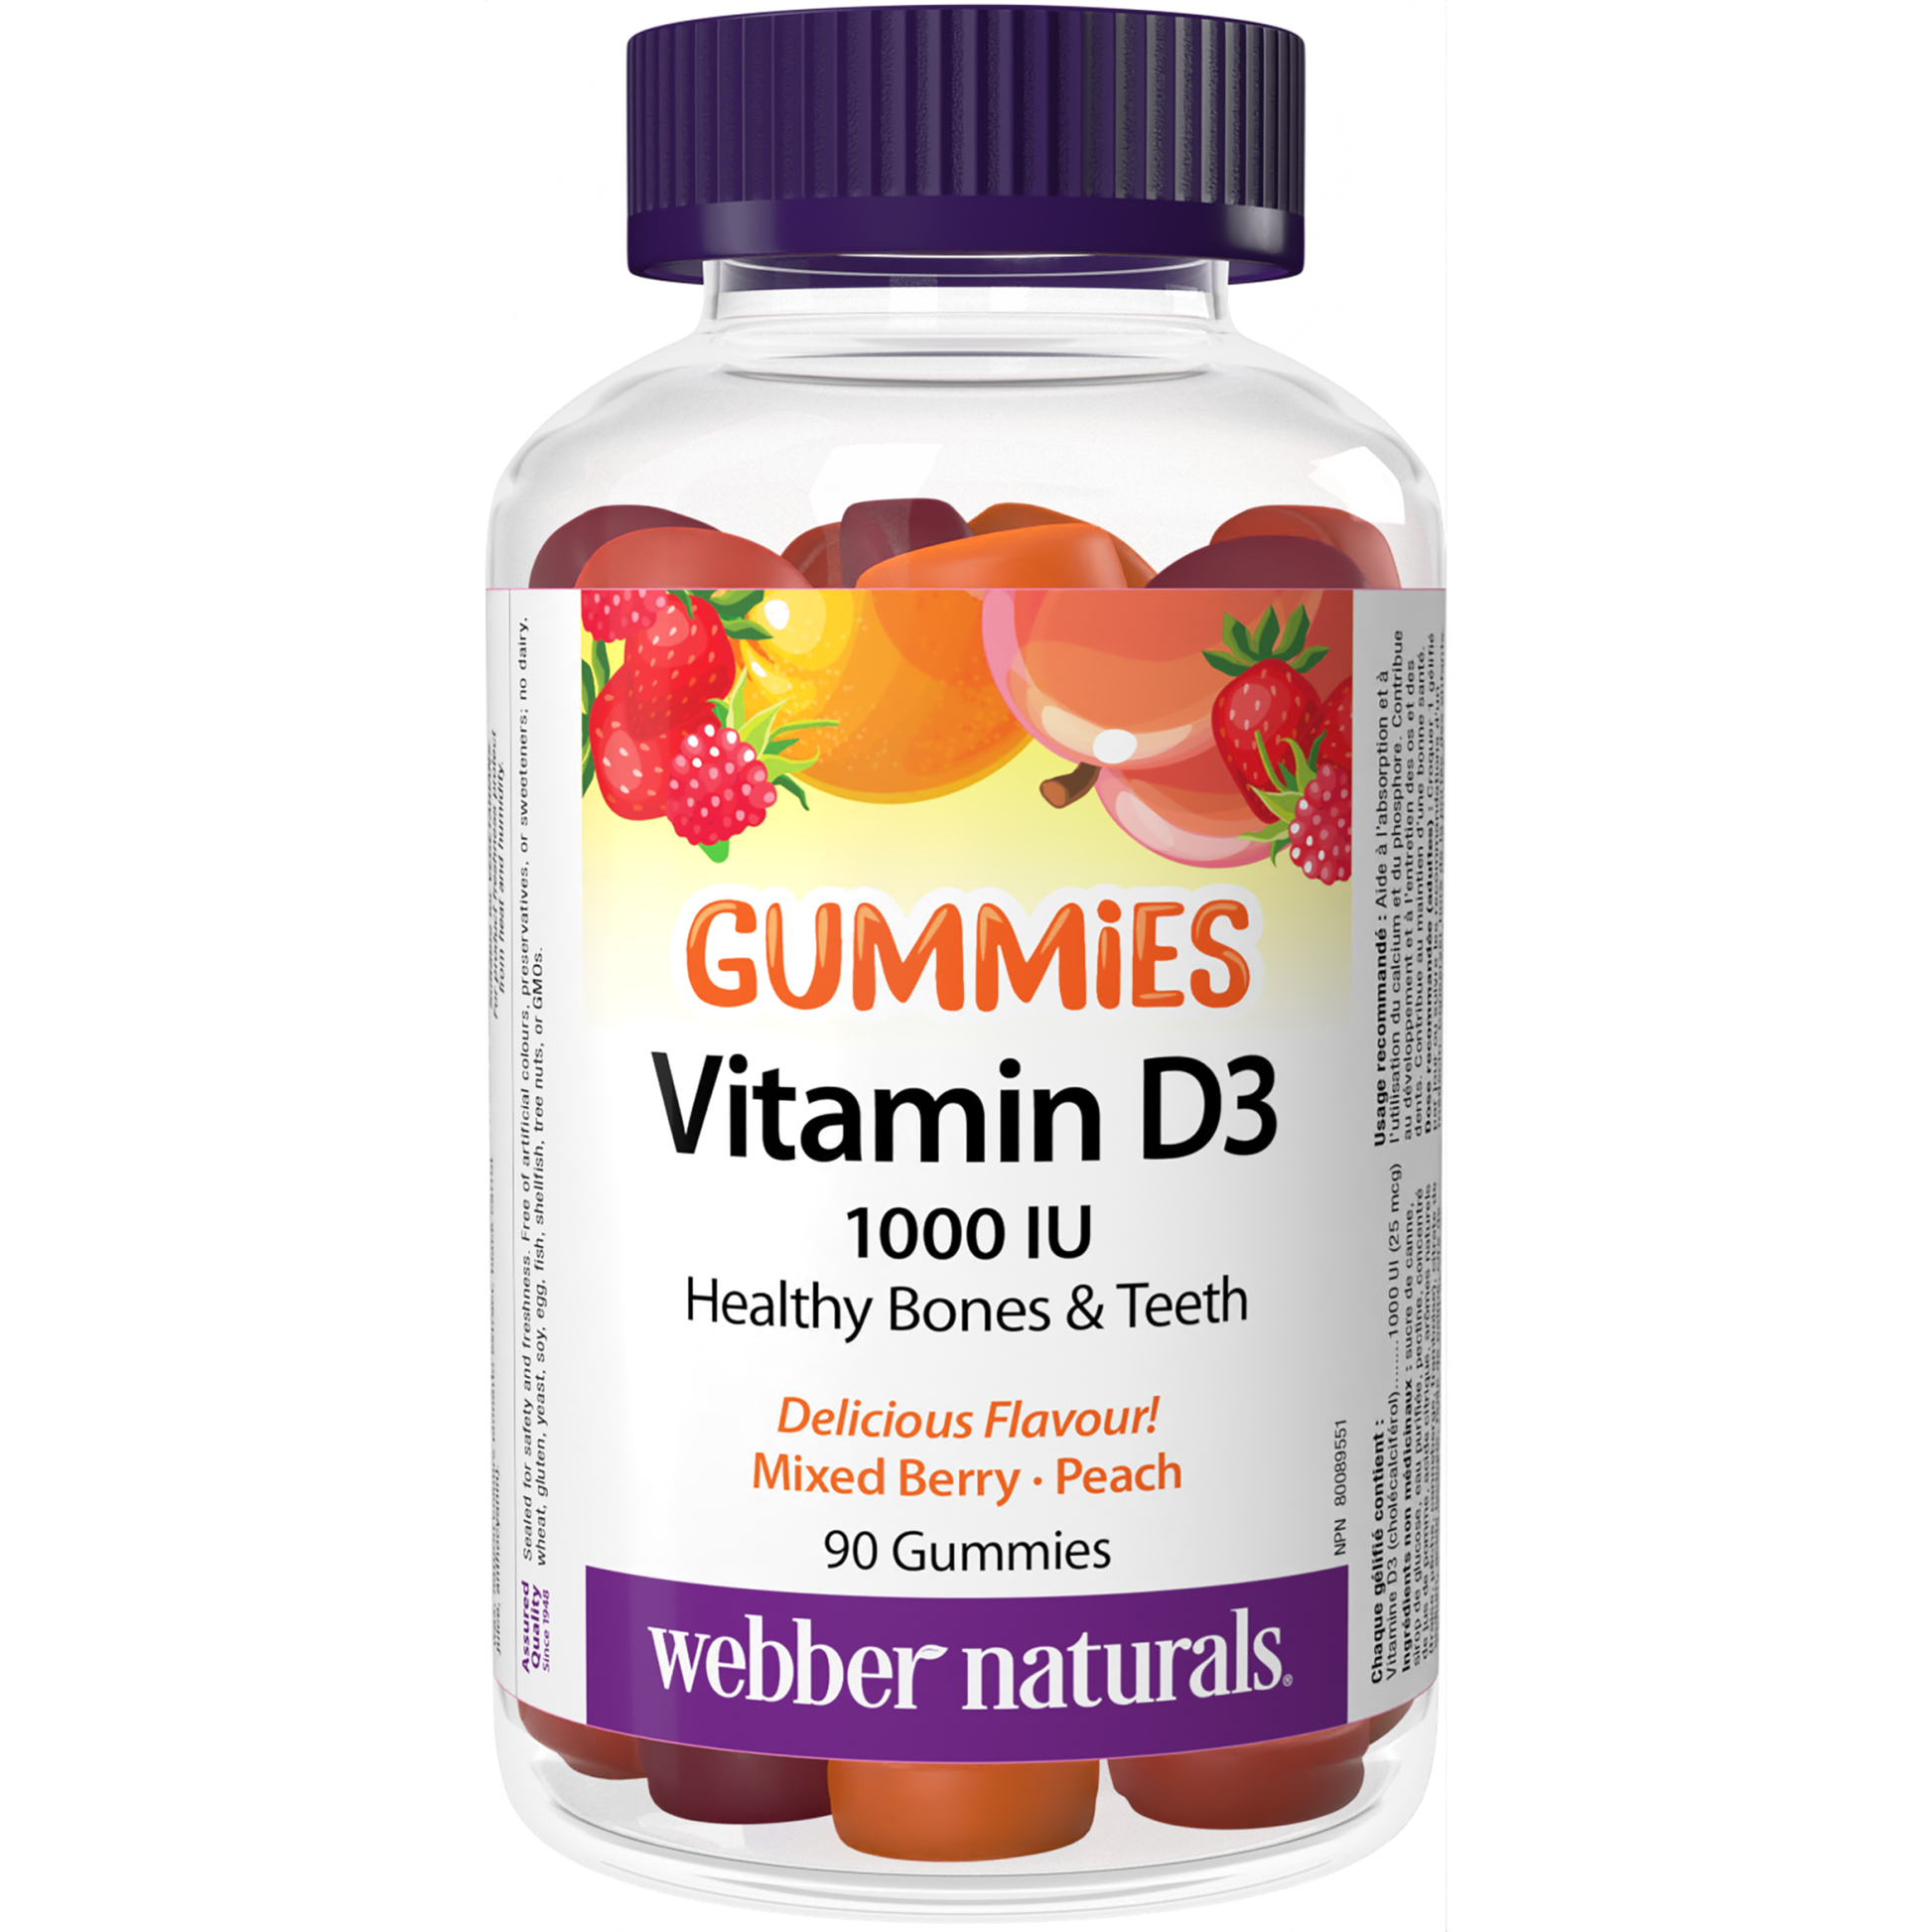 Vitamin D3 1000 IU Mixed Berry · Peach for Webber Naturals|v|hi-res|WN3679